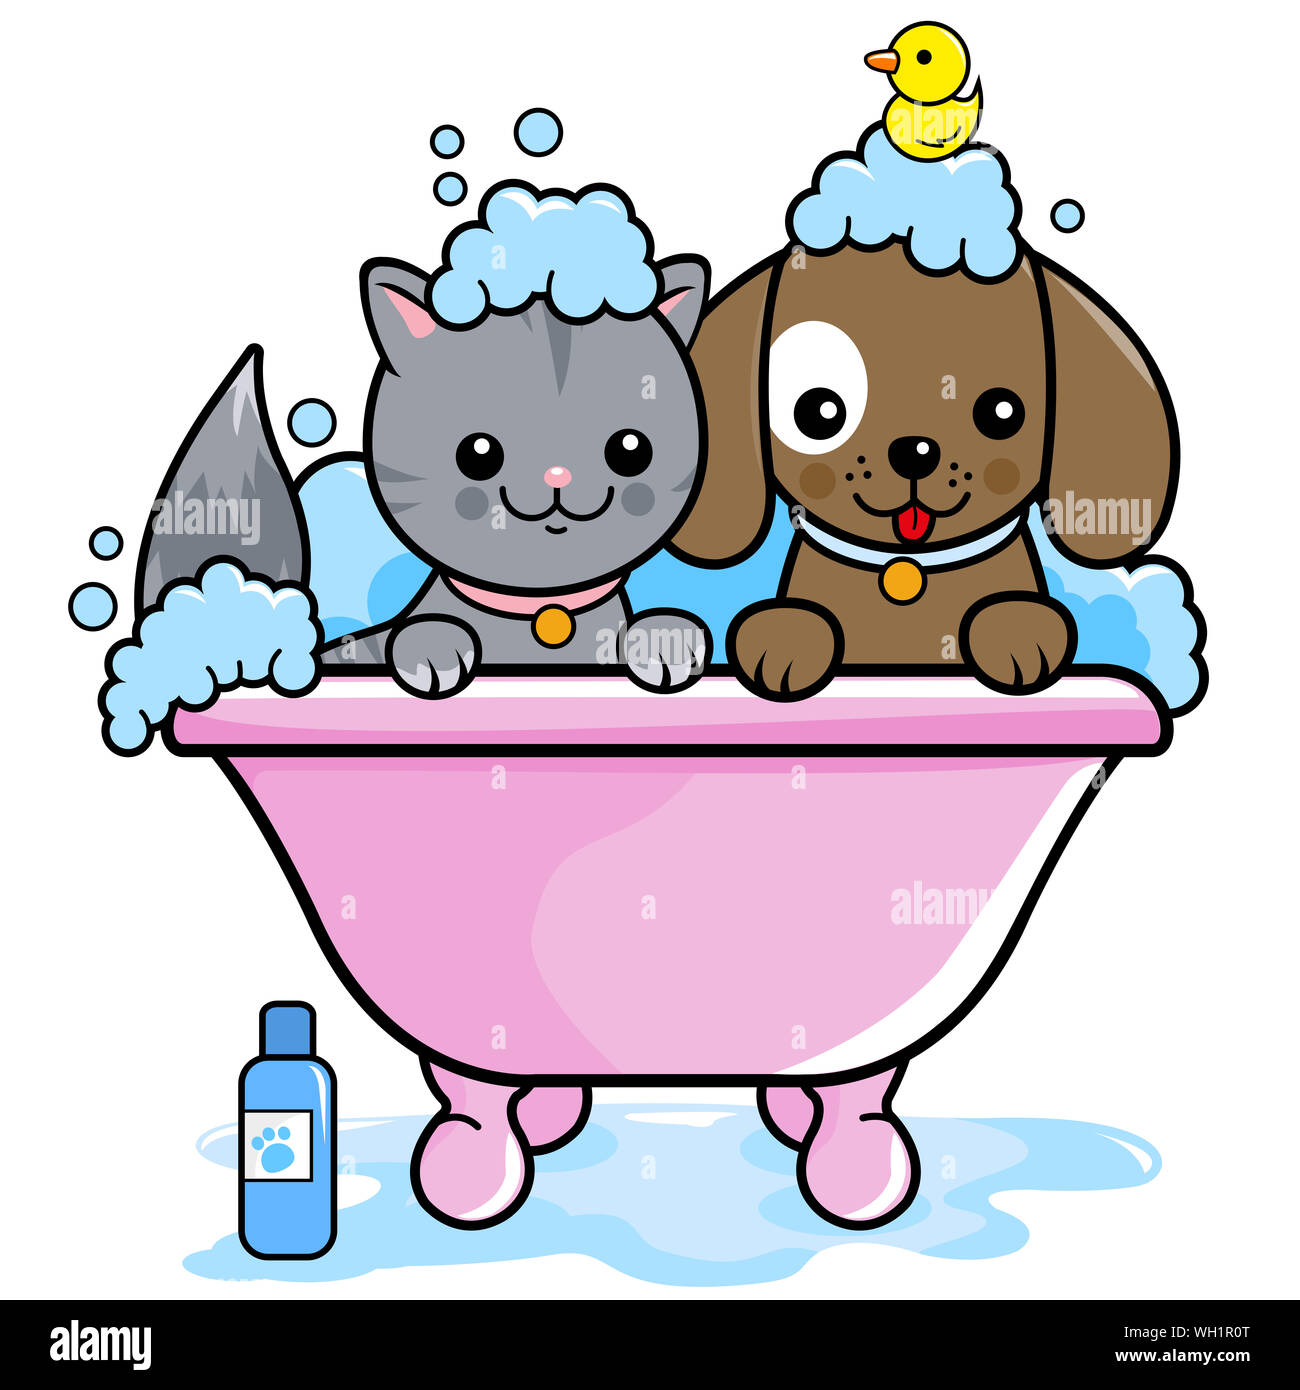 Ilustración de un perro y un gato en una tina tomando un baño de burbujas  Fotografía de stock - Alamy